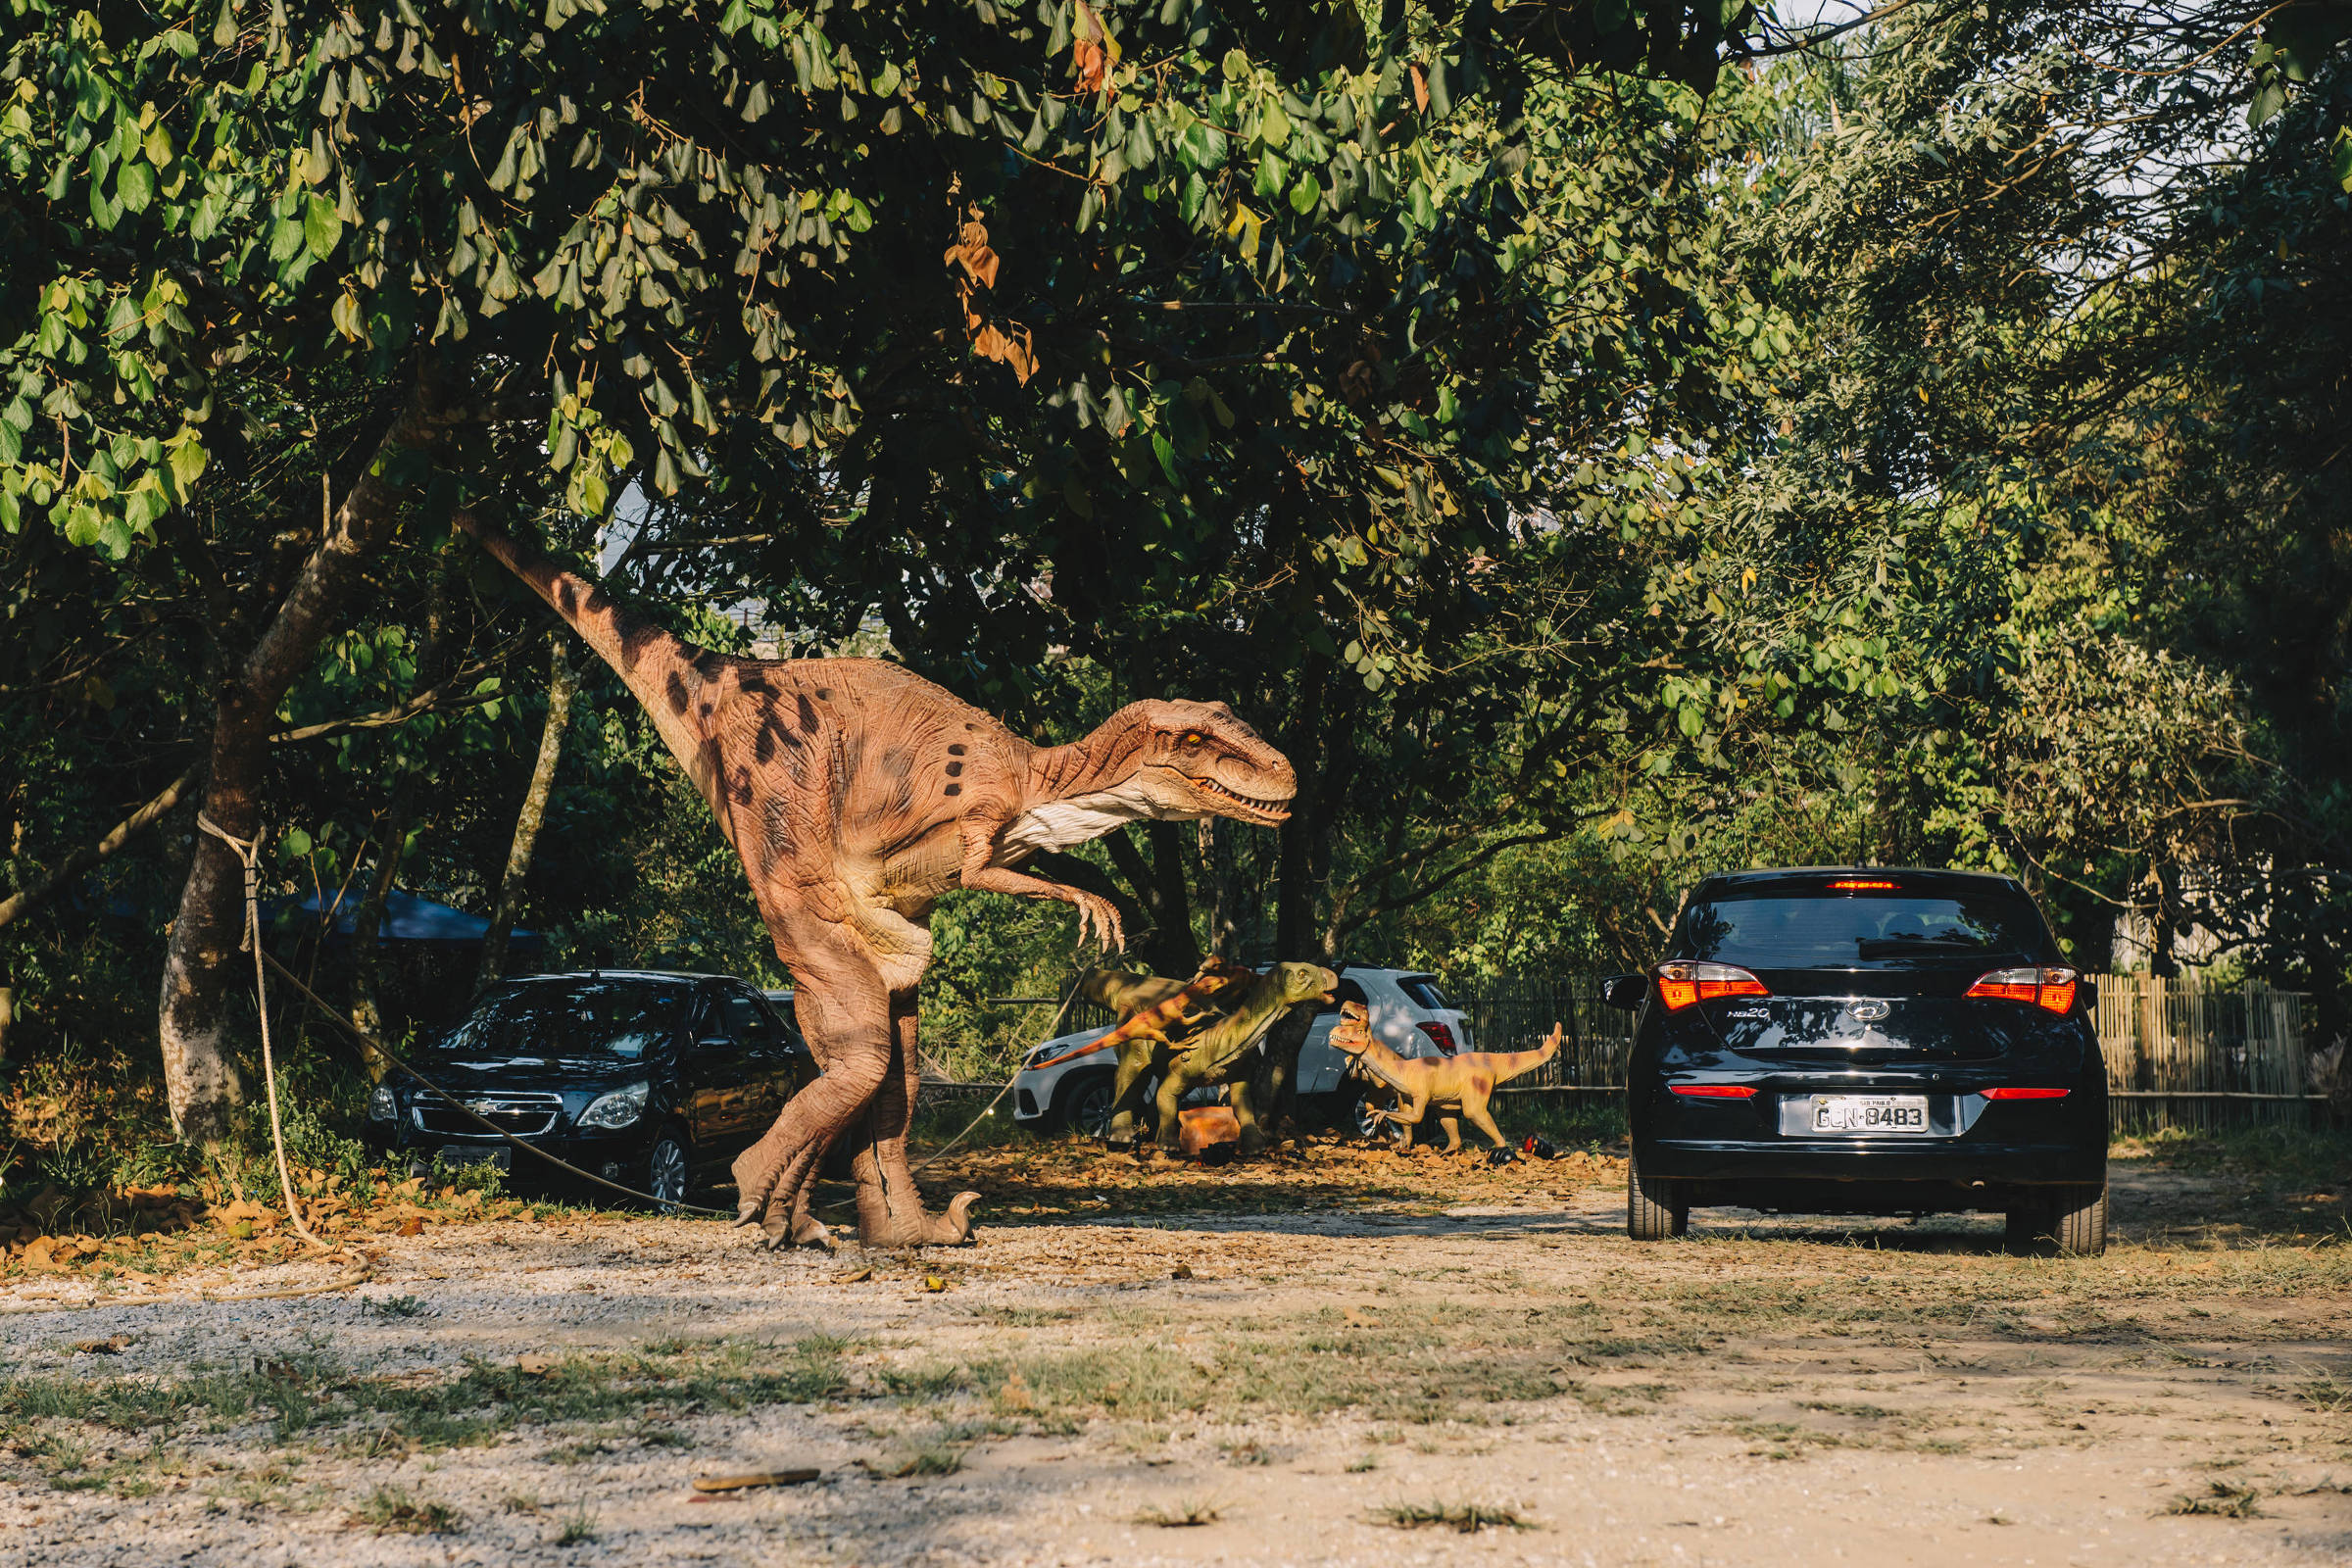 Safári de dinossauros robôs recria 'Jurassic Park' ao ar livre em São Paulo  - 30/09/2020 - Passeios - Guia Folha